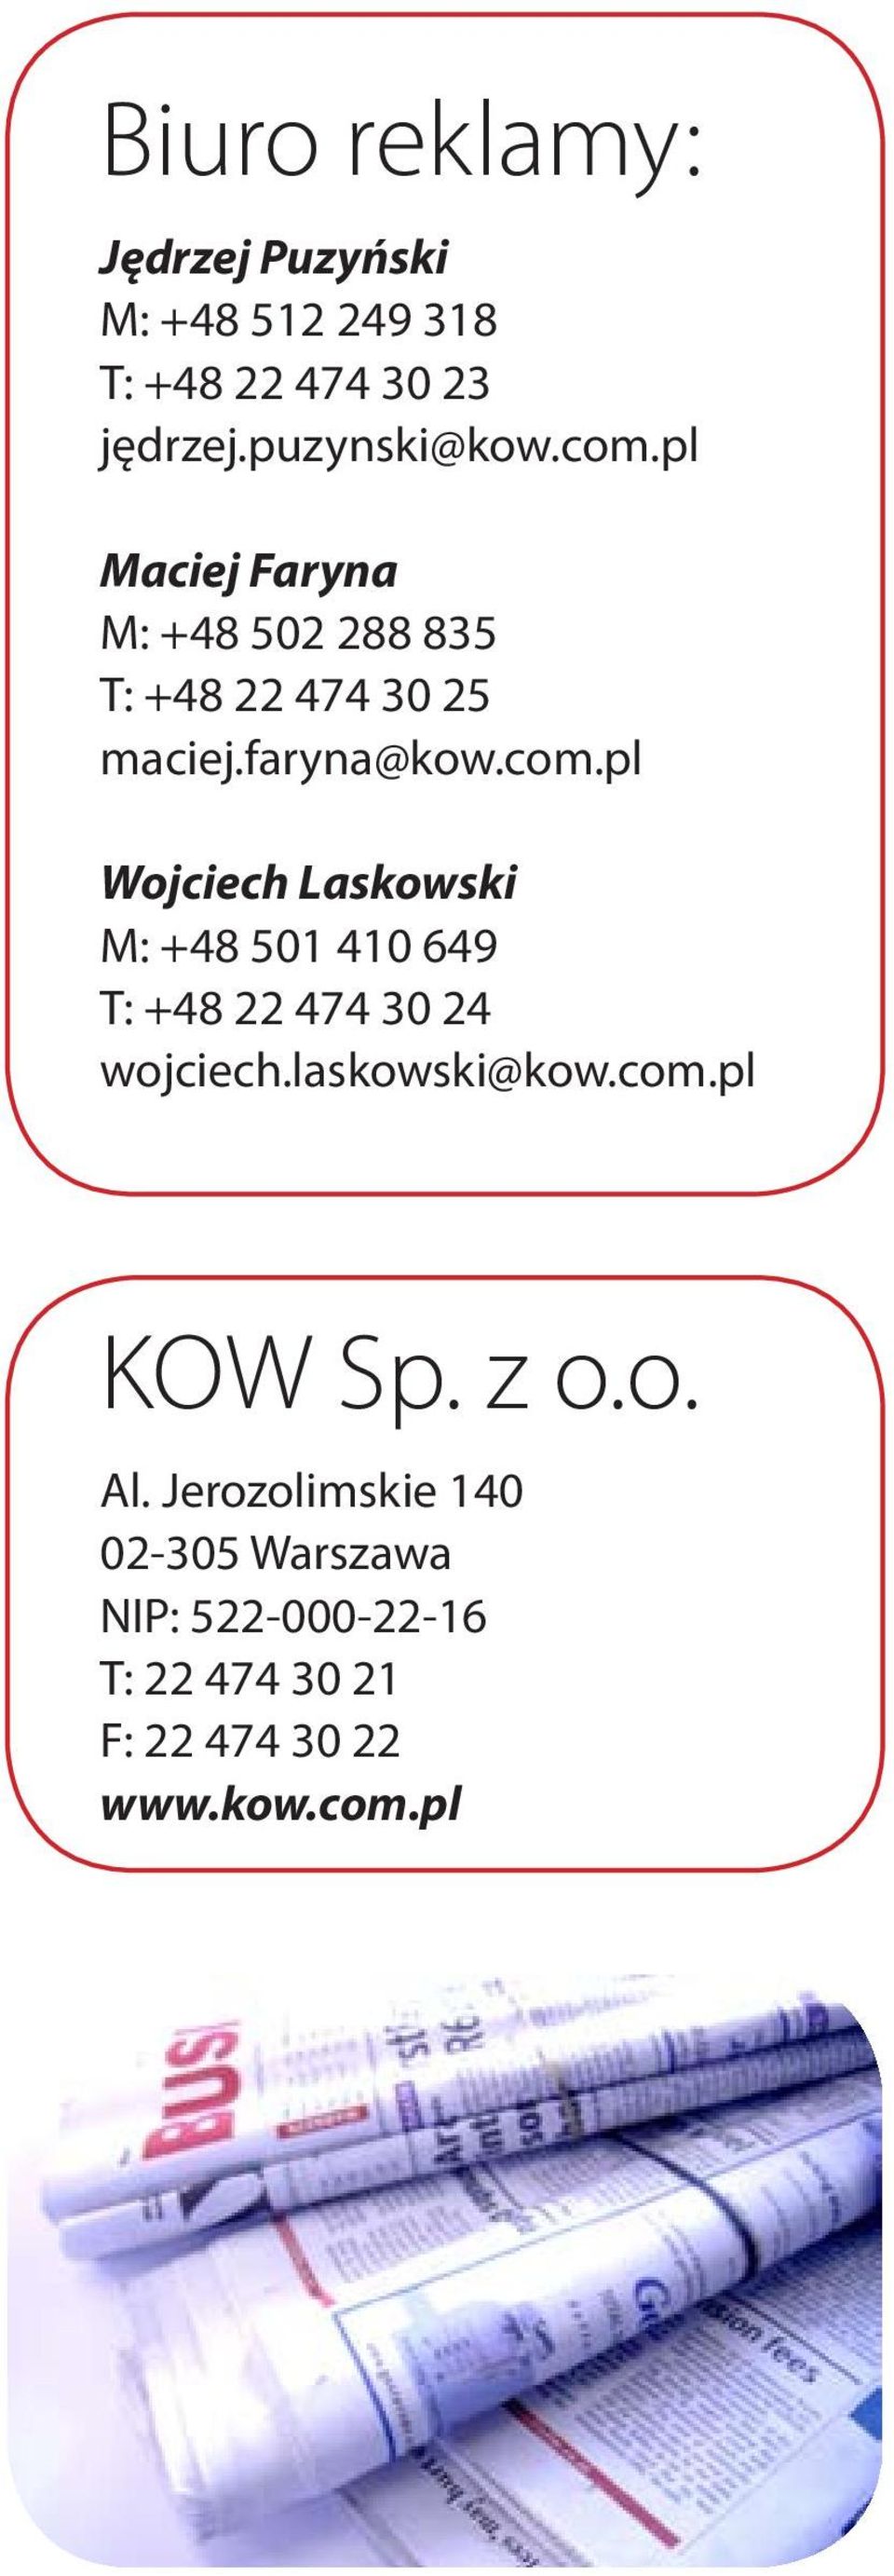 pl Wojciech Laskowski M: +48 501 410 649 T: +48 22 474 30 24 wojciech.laskowski@kow.com.